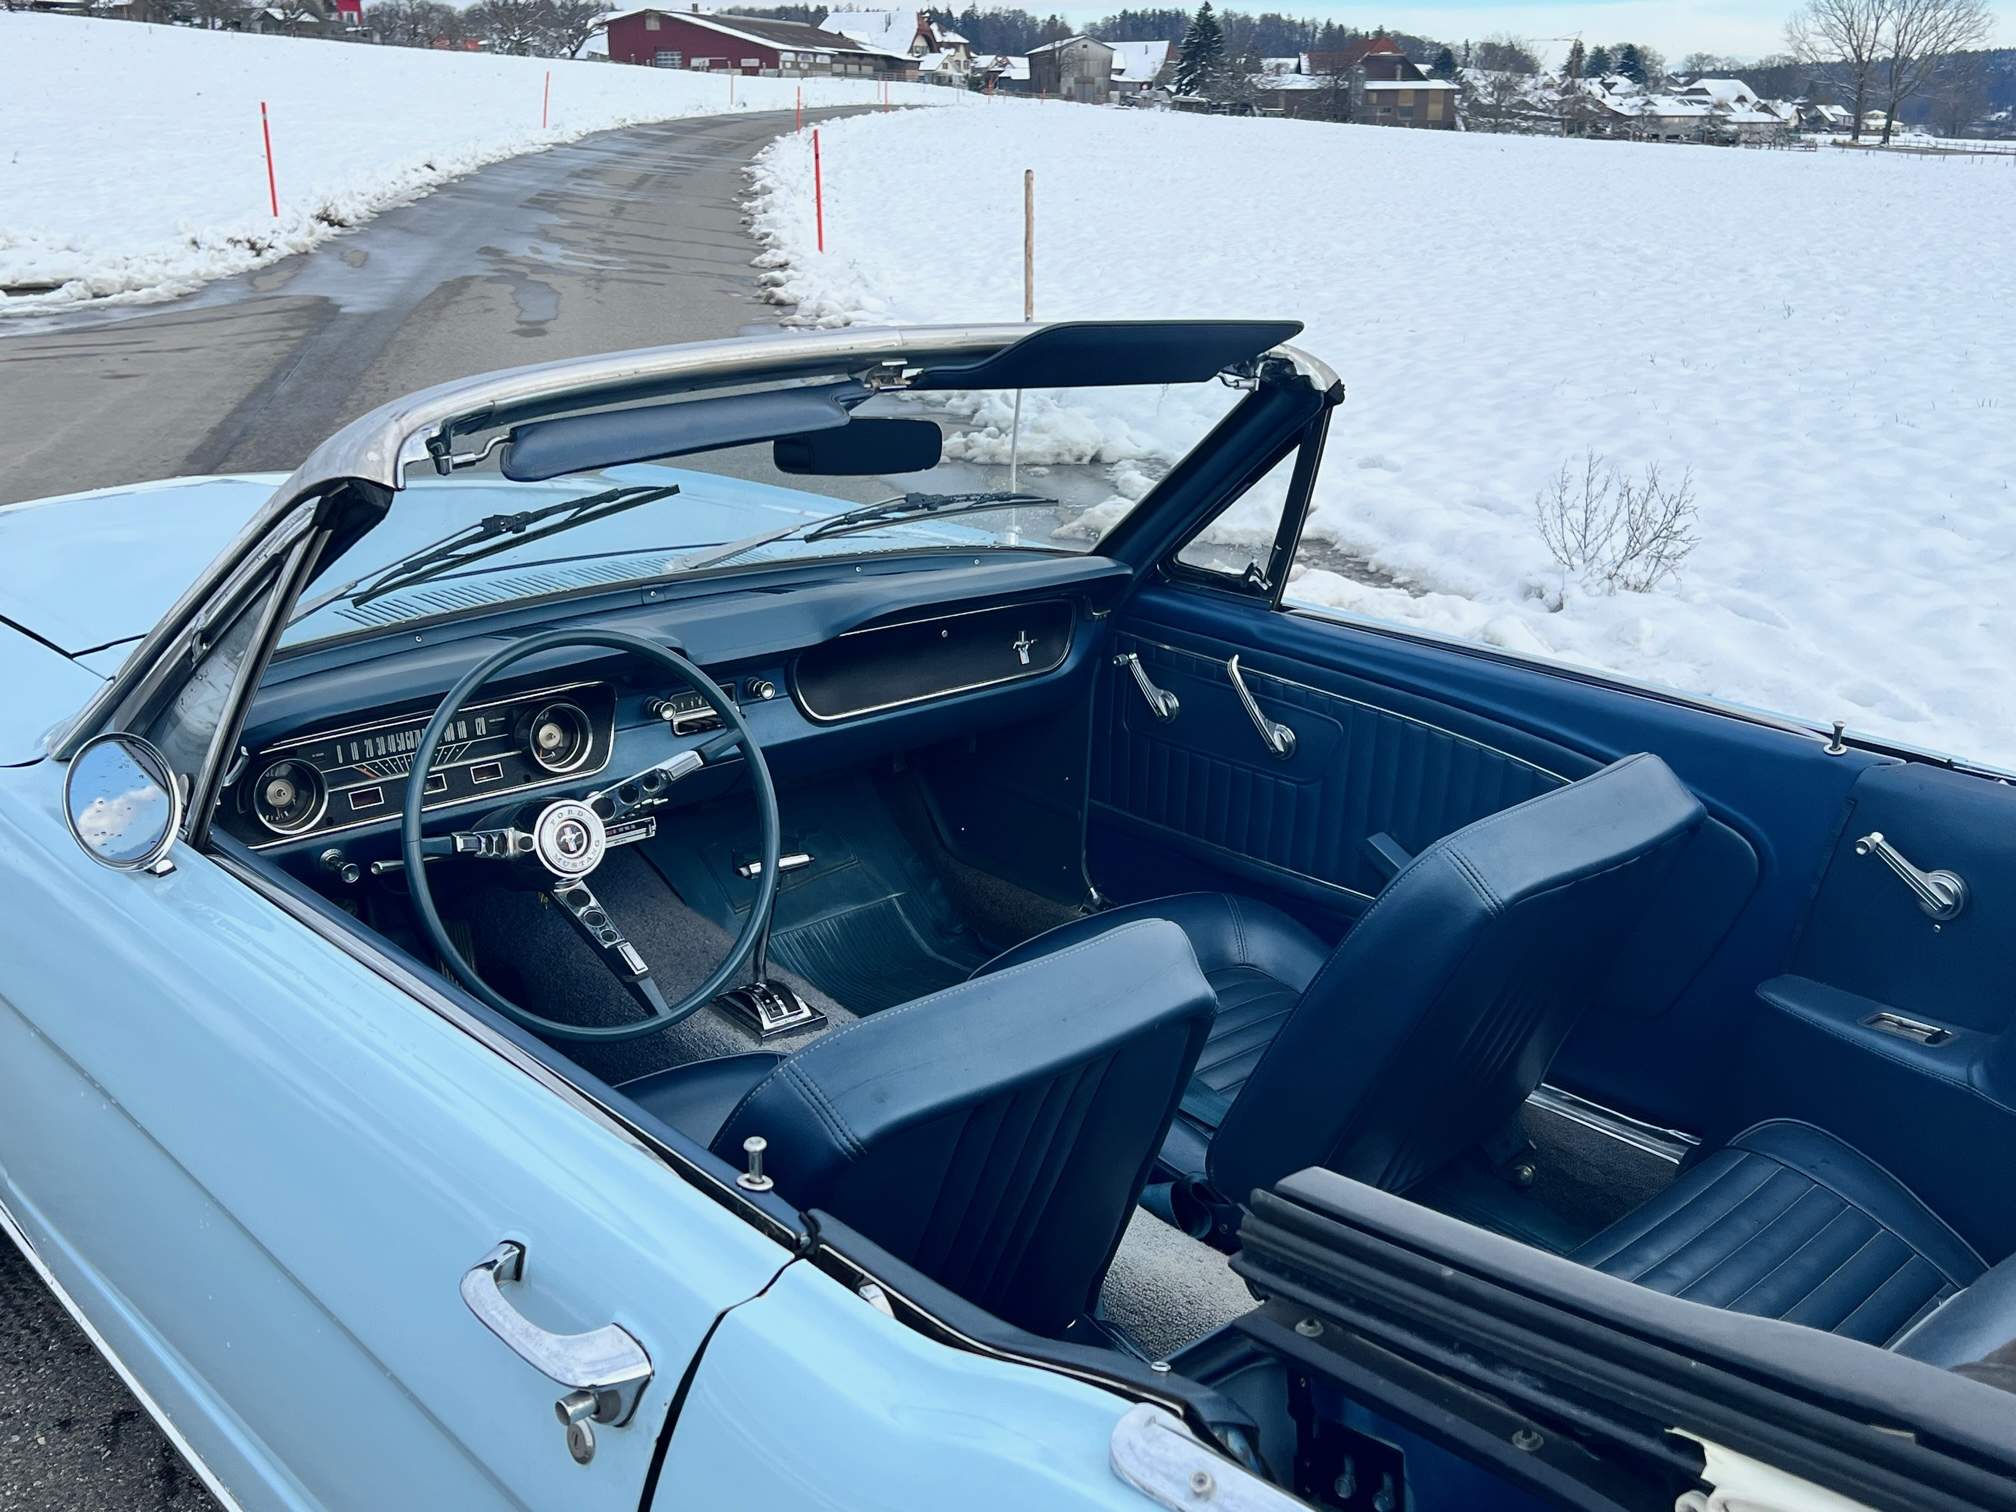 Verkauft: Ford Mustang V8 Cabriolet 1965